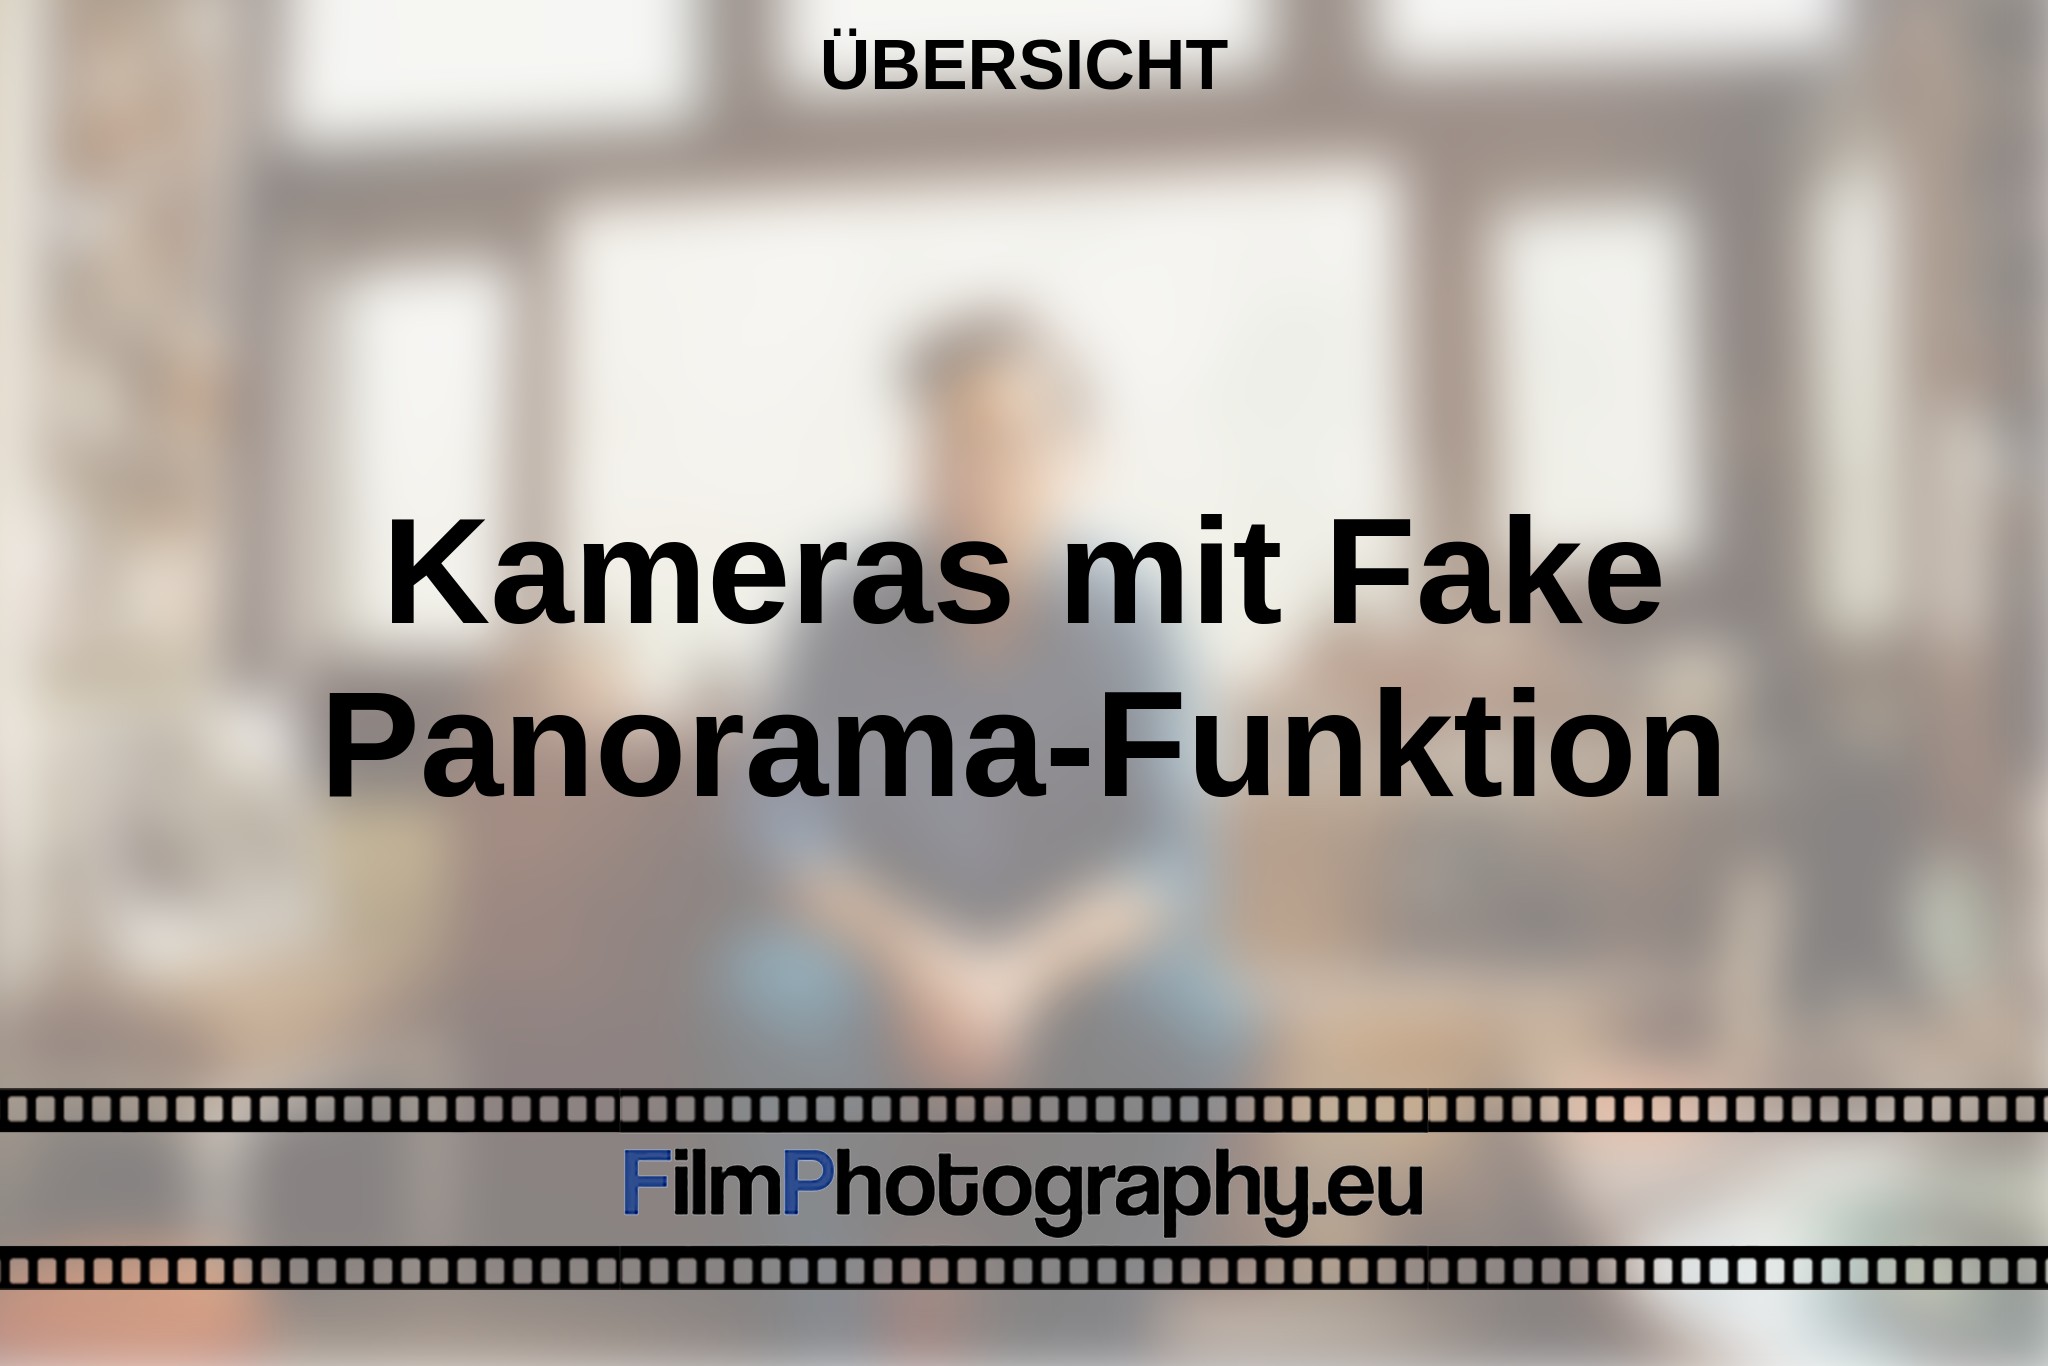 kameras-mit-fake-panorama-funktion-Übersicht-bnv.jpg